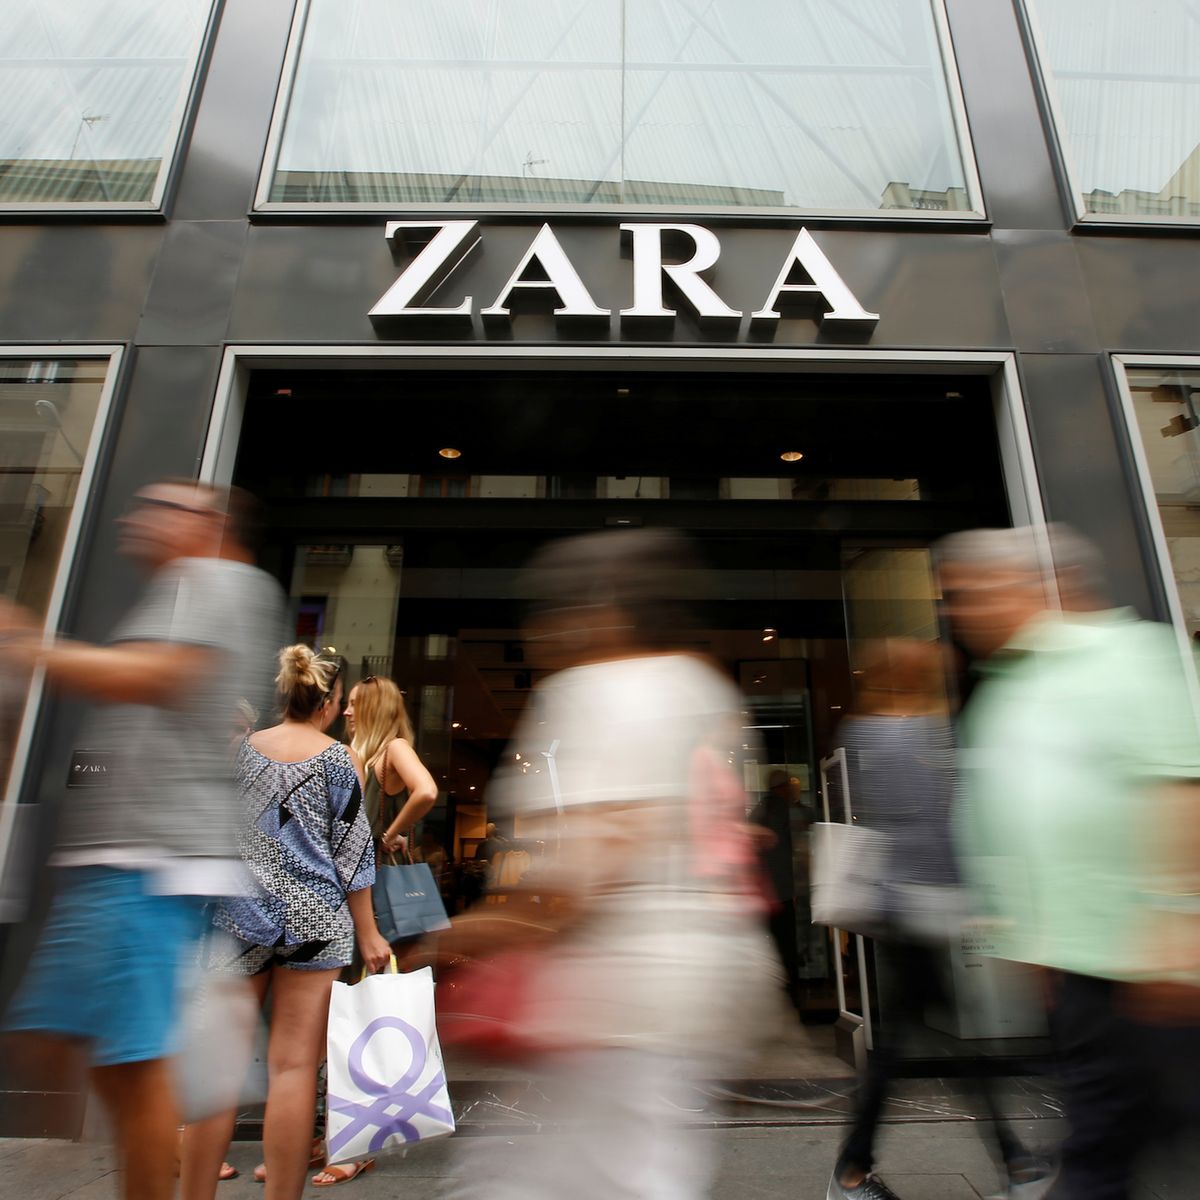 Conoces la función modo tienda de la app de Zara? - Crearmas